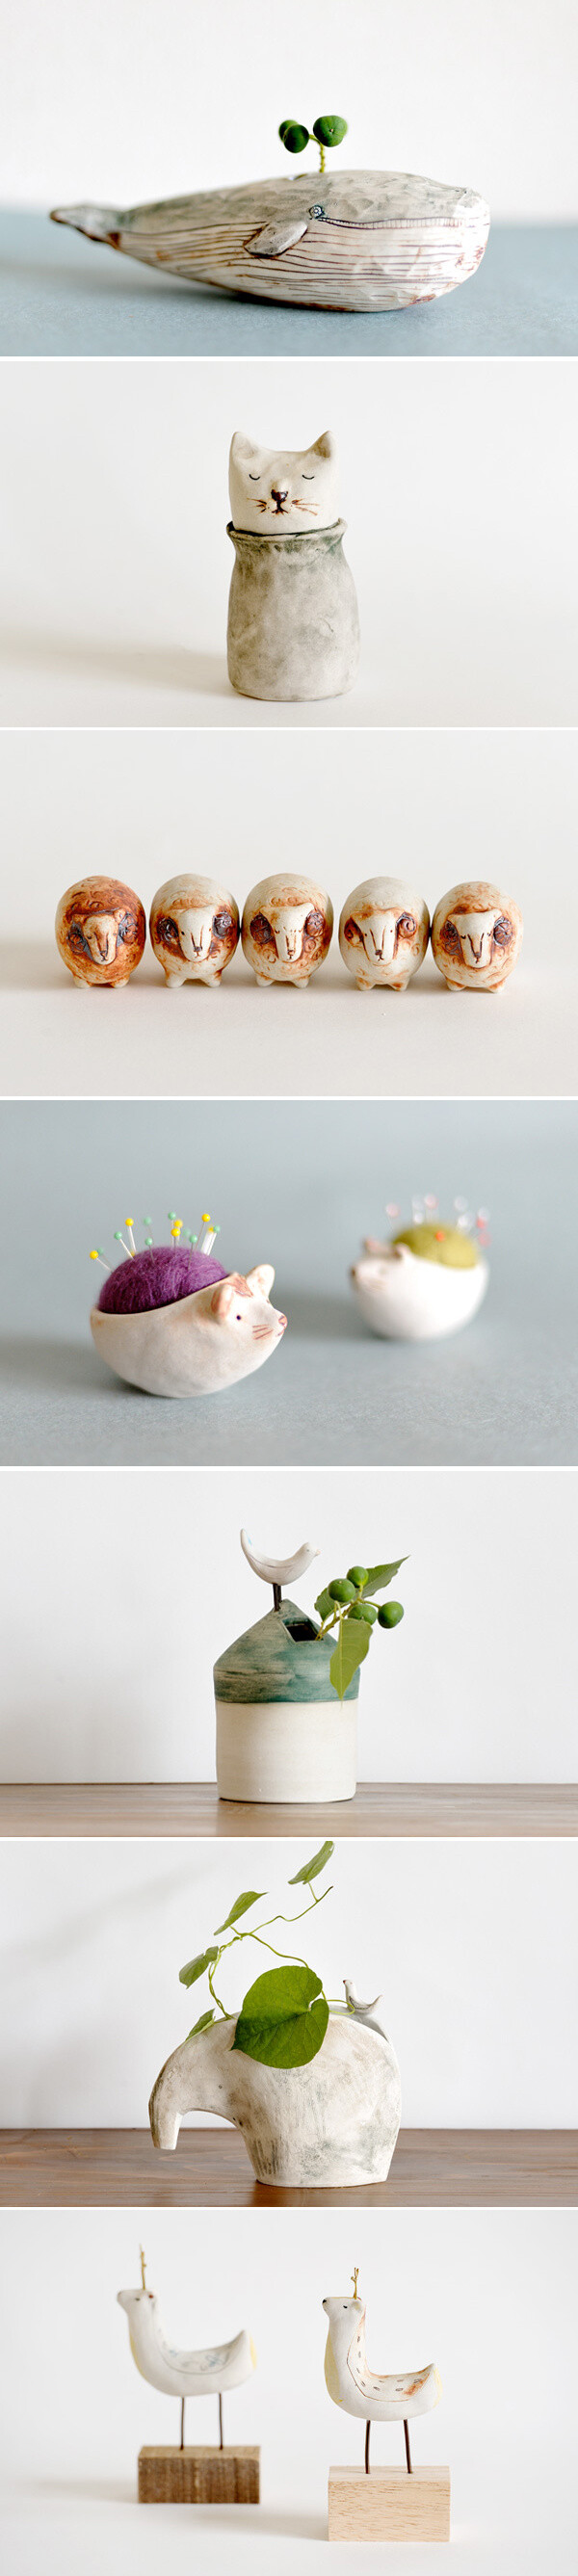 日本艺术家金子佐知恵的手工陶艺作品。